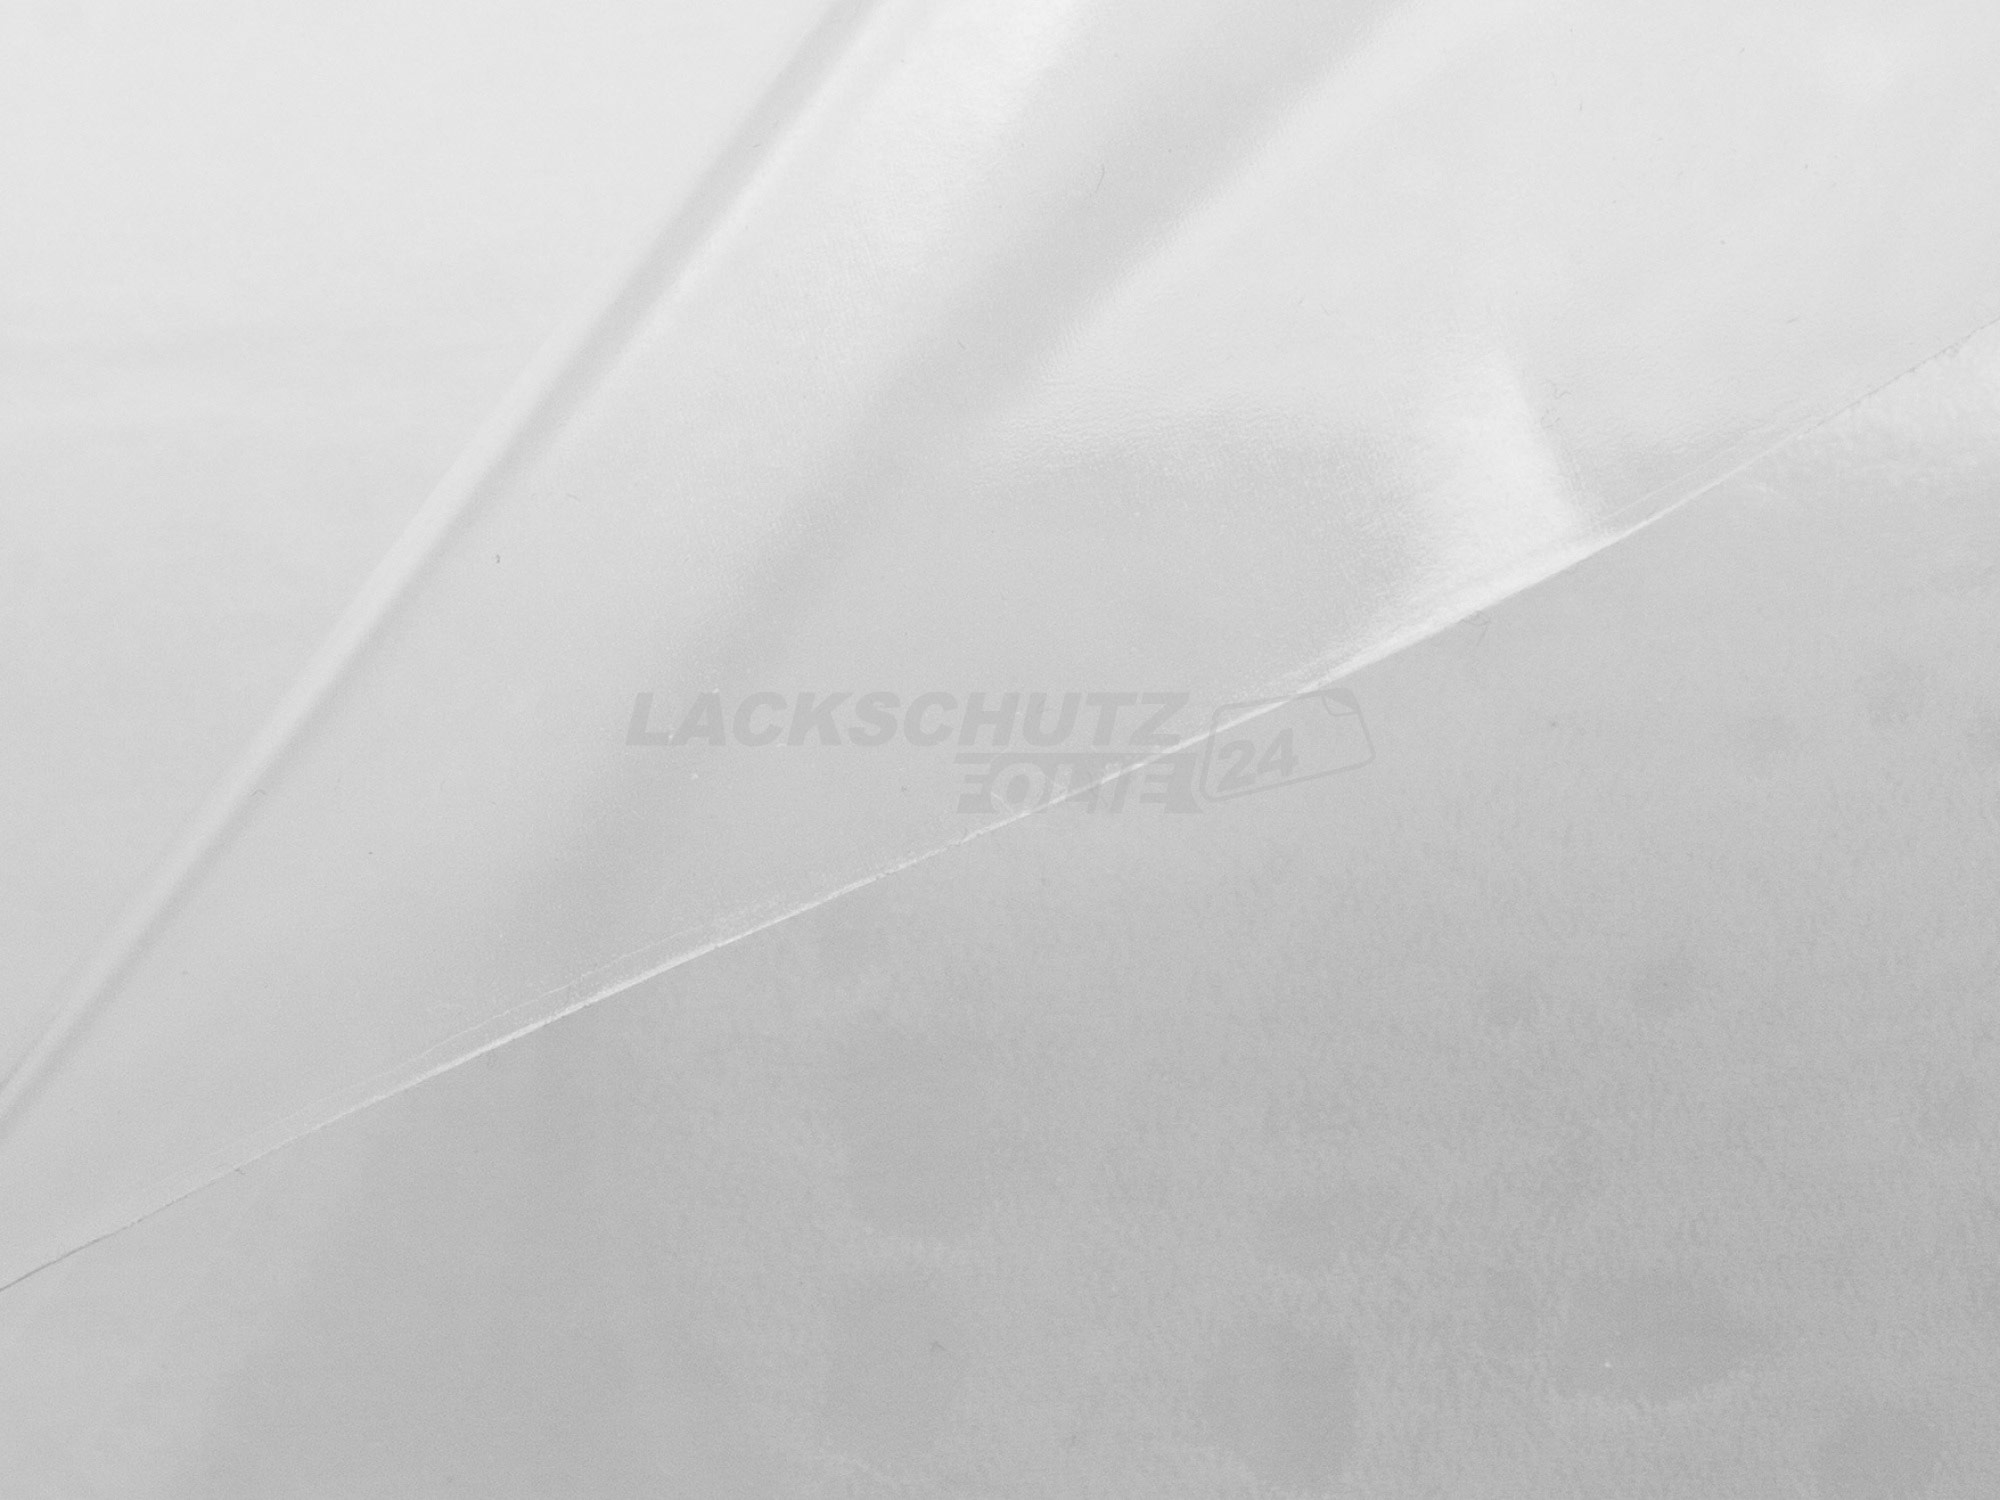 Ladekantenschutzfolie - Transparent Glatt Hochglänzend 150 µm stark für Smart ForFour Typ 454, BJ 2004-2006